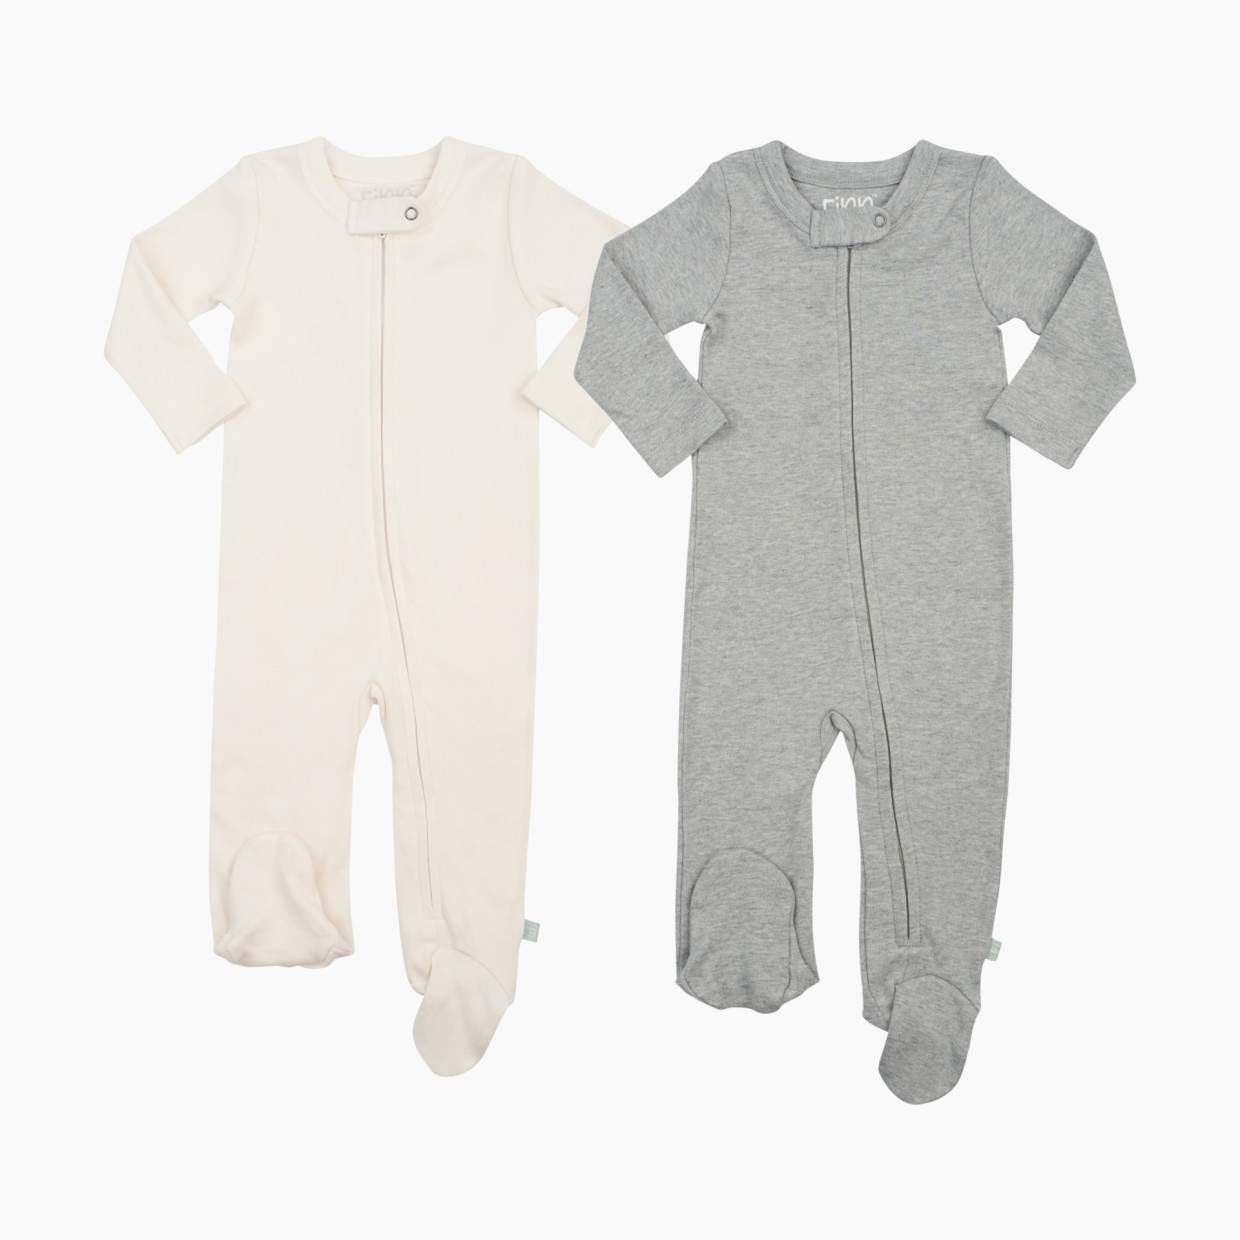 Finn + Emma Organic Cotton Basics Zipper Footie (2 Pack) - Grey/Off White, 3-6 Months.